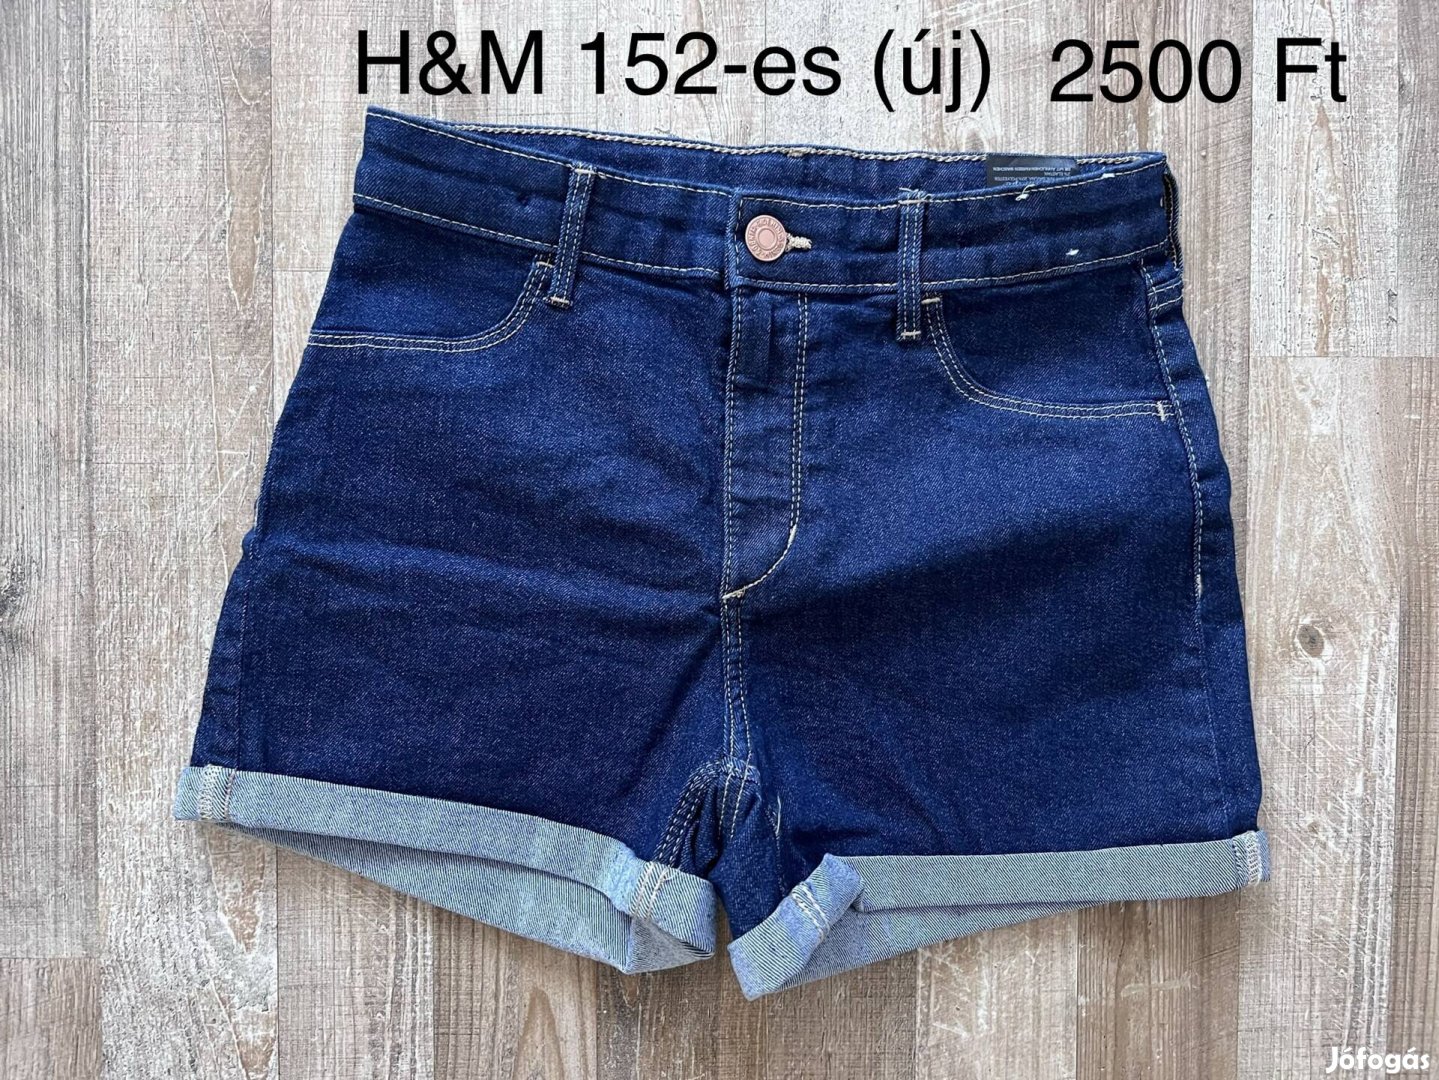 H&M 152-es lány rövidnadrág (új)